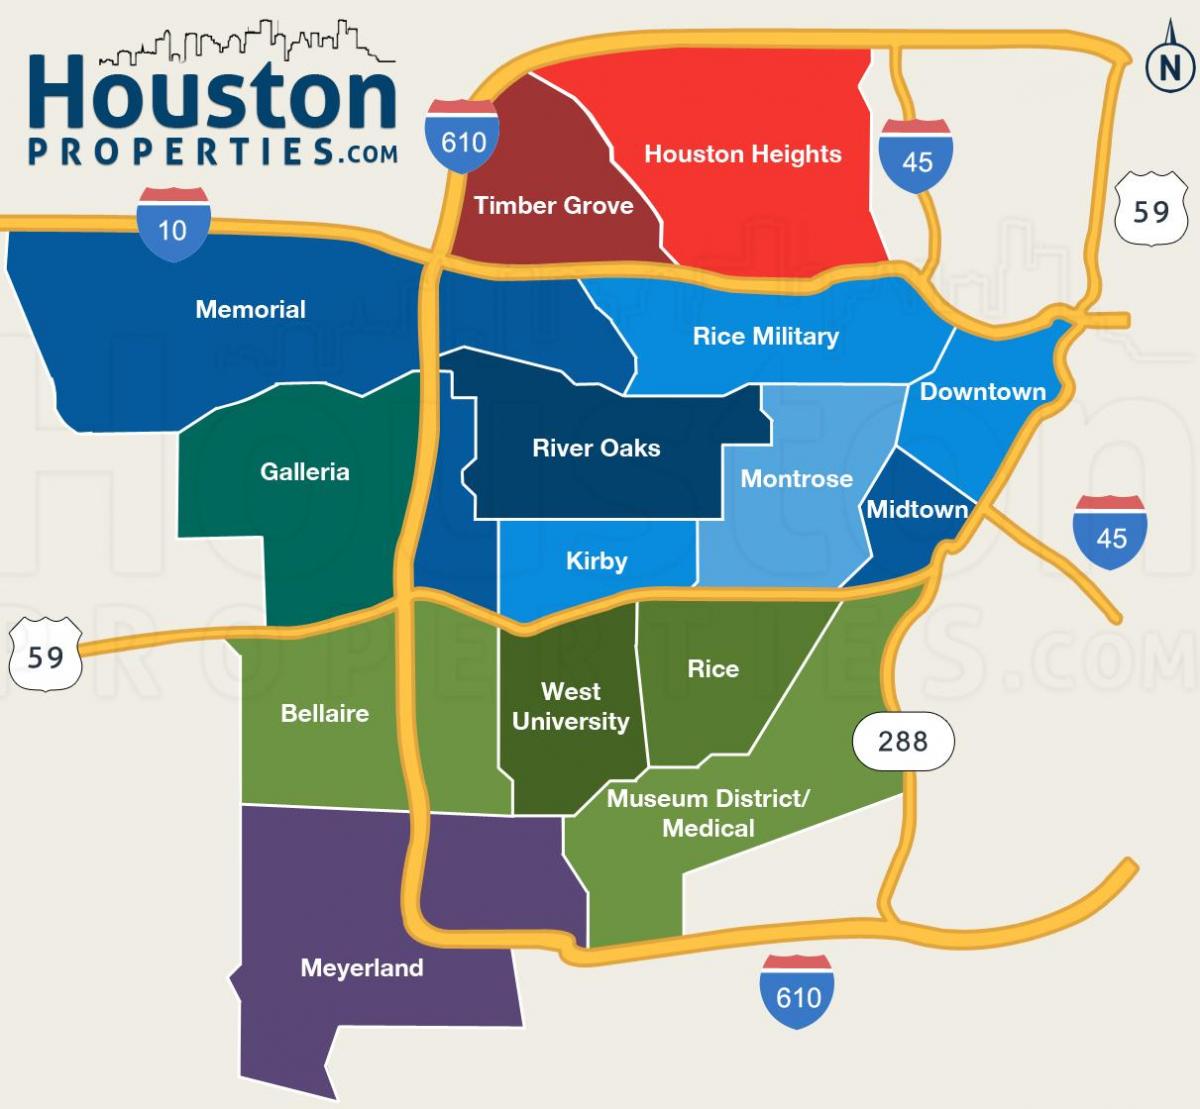 zemljevid Houston soseskah